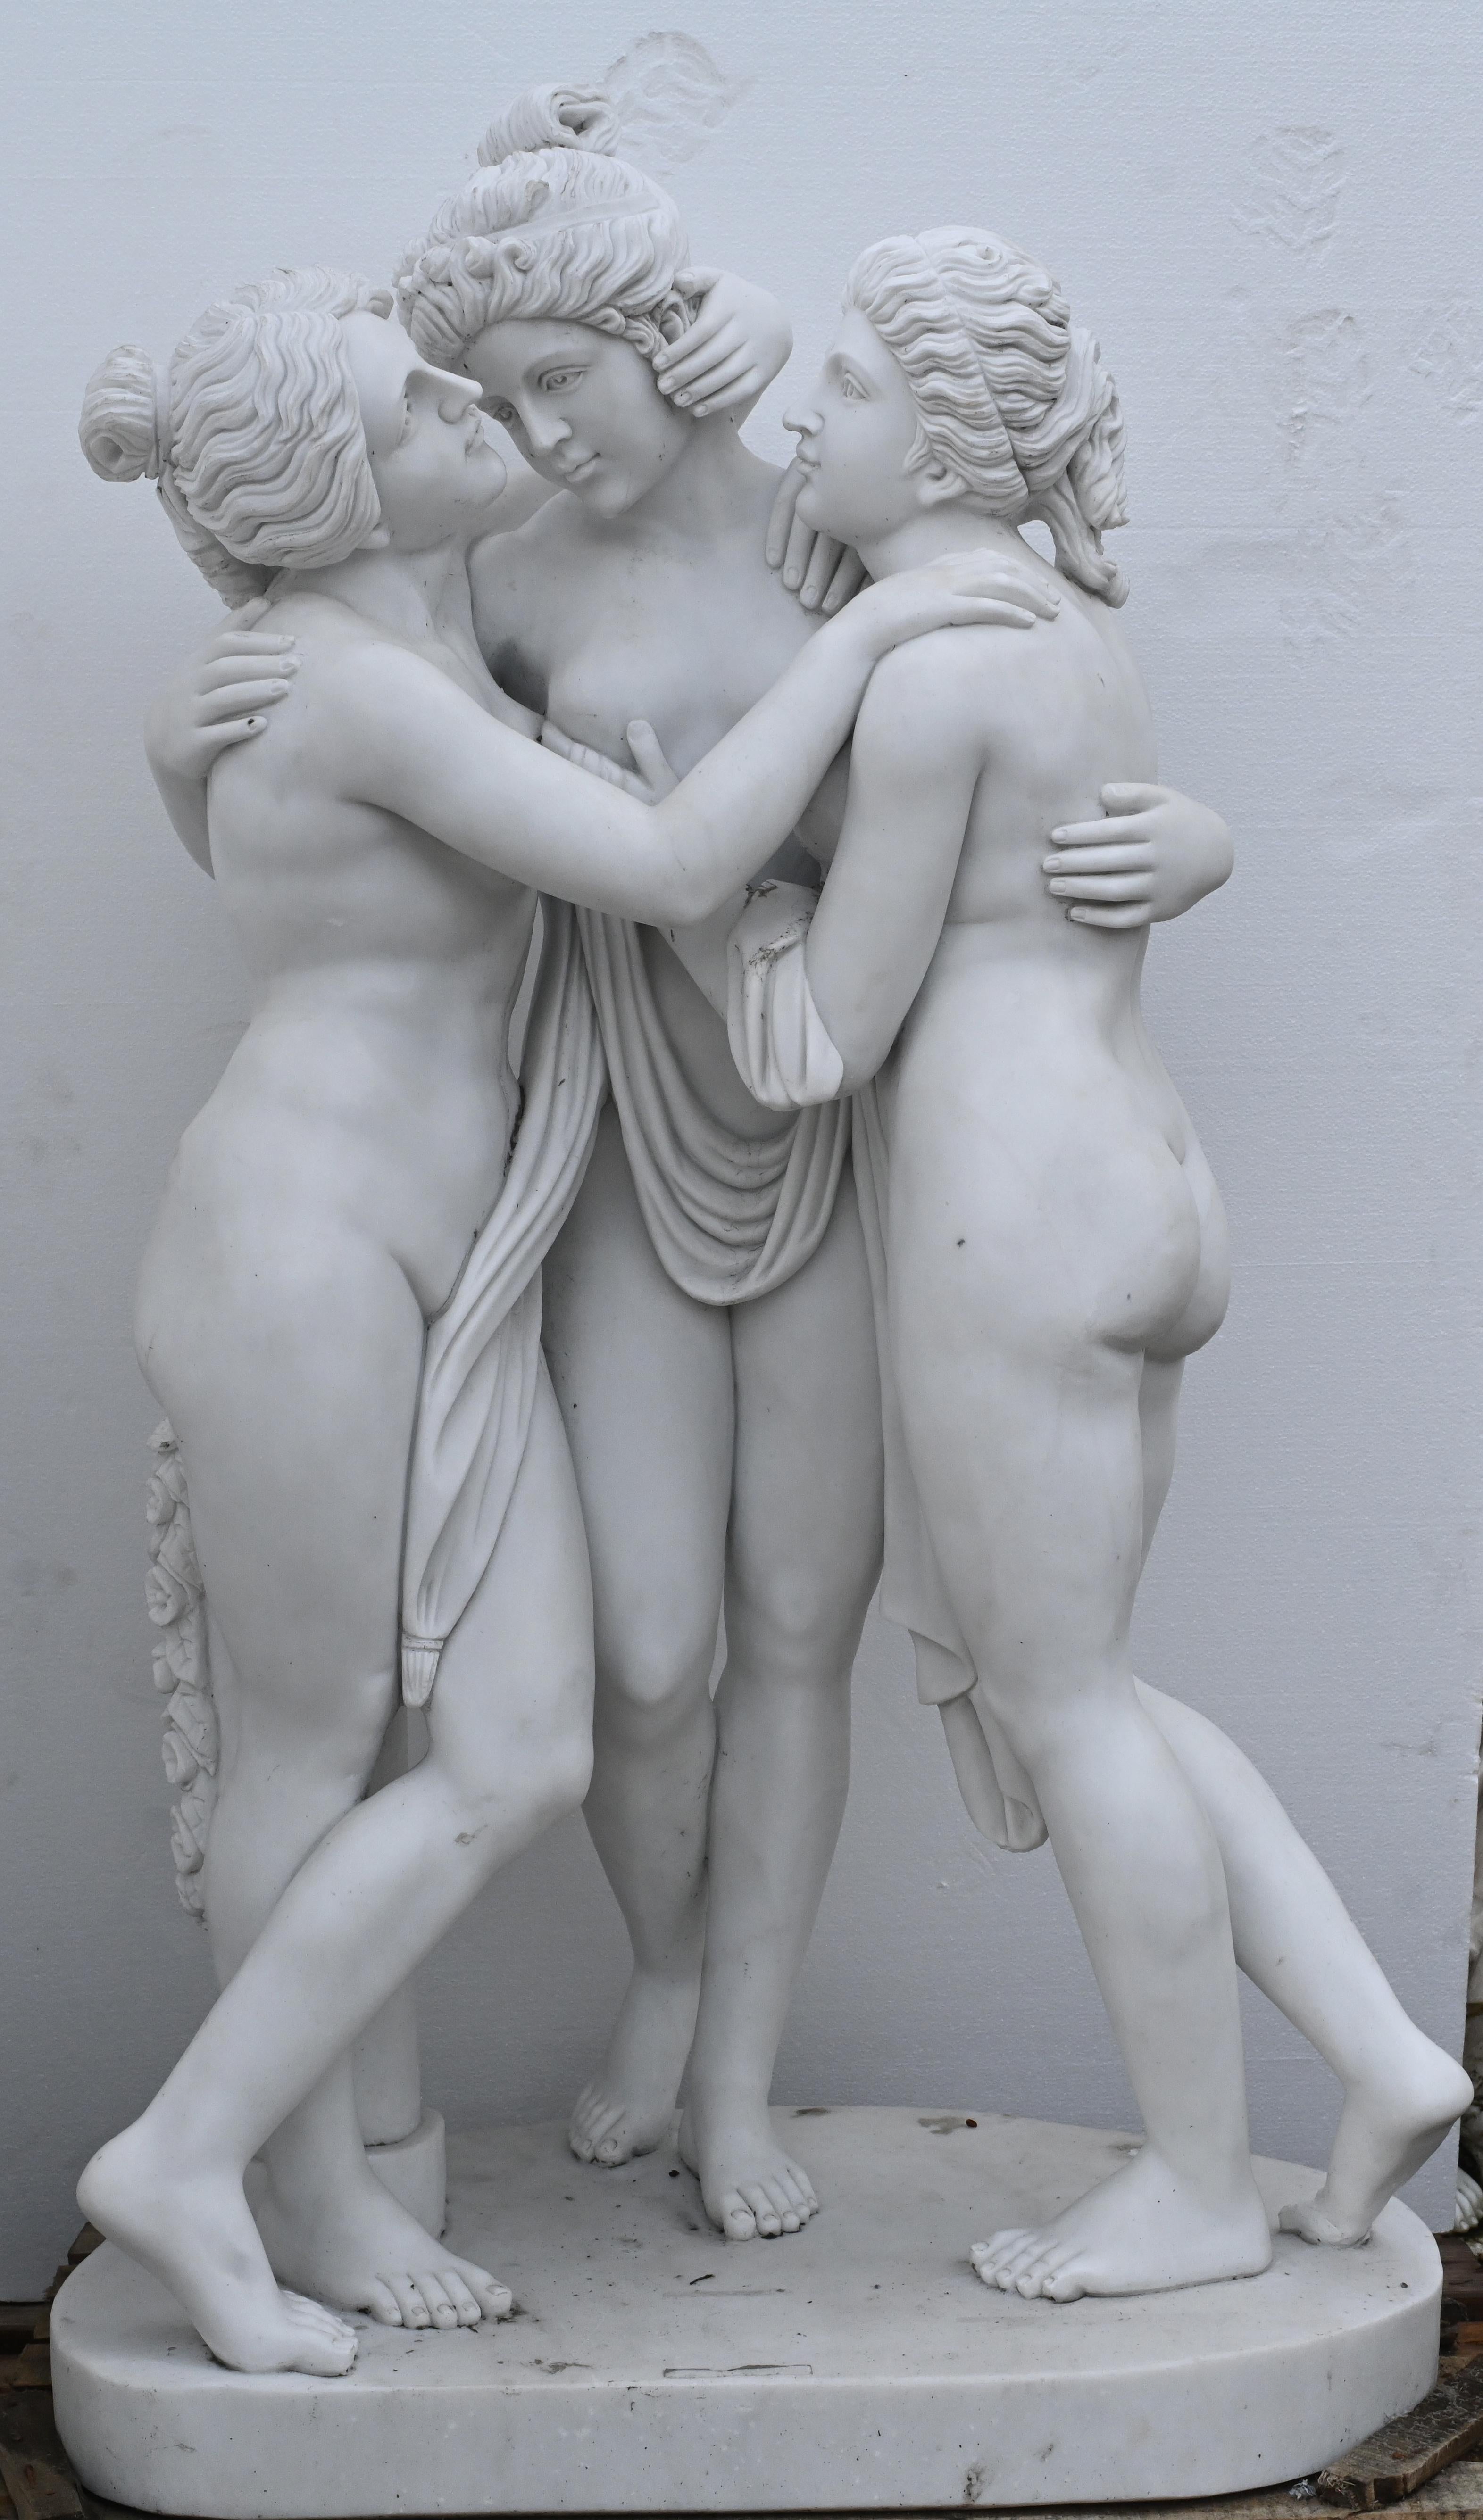 Sie sehen eine exquisite Wiedergabe der Statue der drei Grazien 
Das Original wurde in Rom von Antonio Canova (1814 - 17) geschnitzt.
Das Motiv ist der griechischen Mythologie entnommen und stellt die drei Töchter des Zeus dar
Von links nach rechts